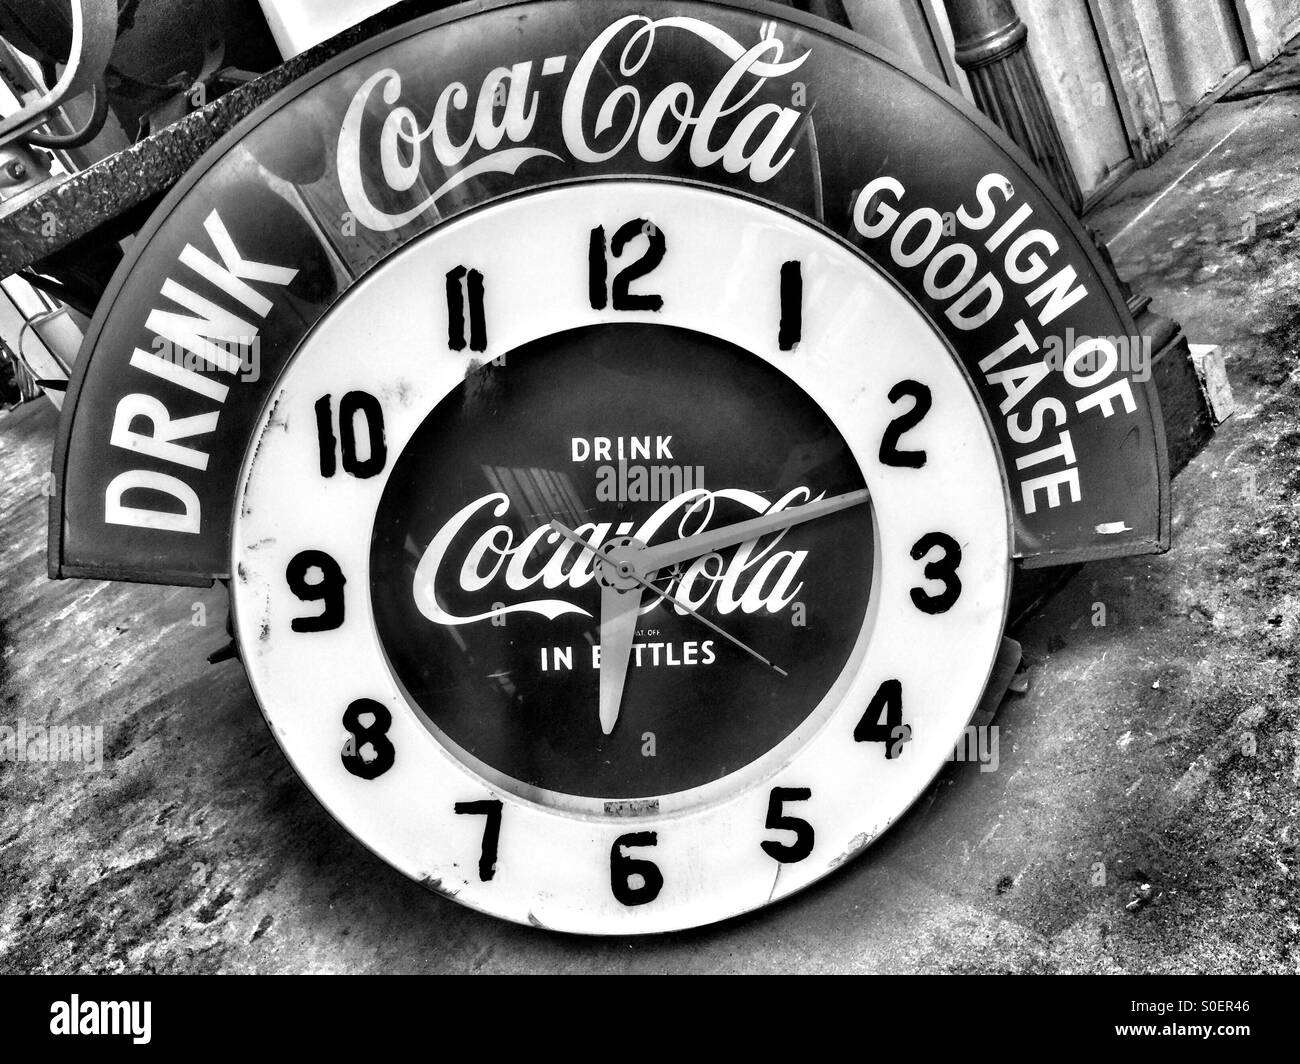 Coca Cola vintage clock Stock Photo